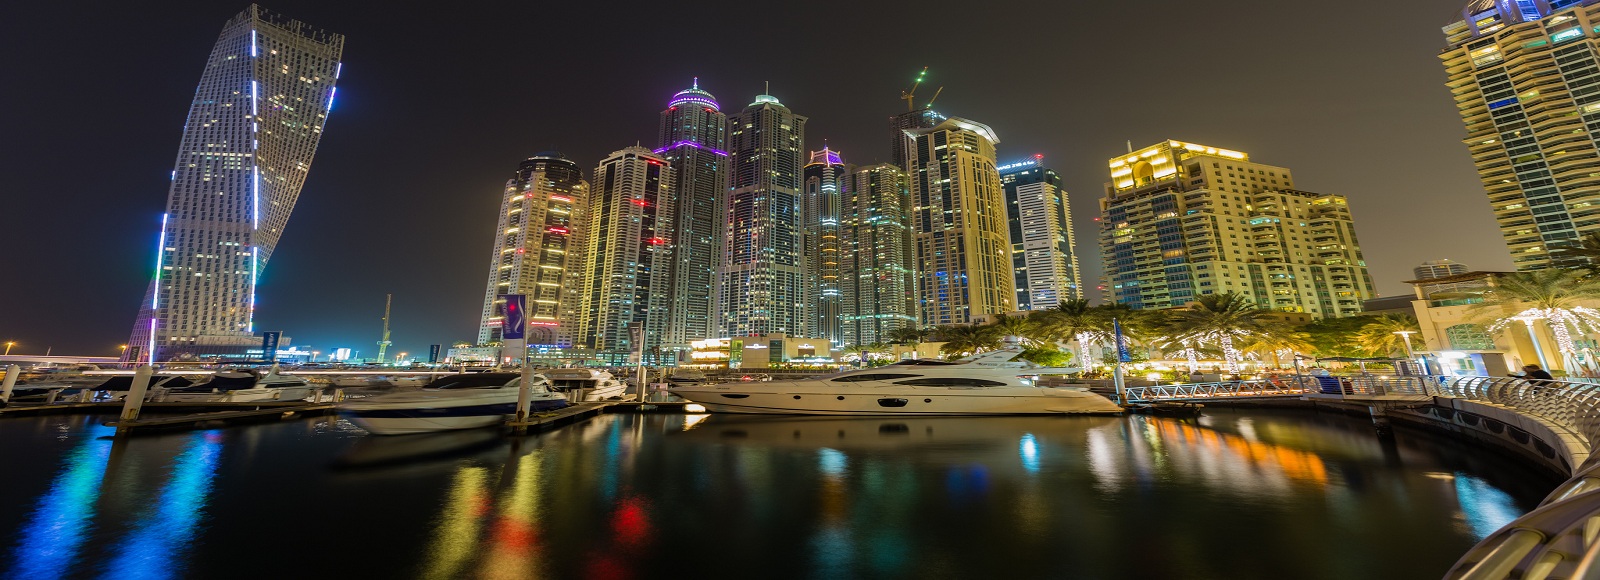 Ofertas de Traslados en Dubai. Traslados económicos en Dubai 